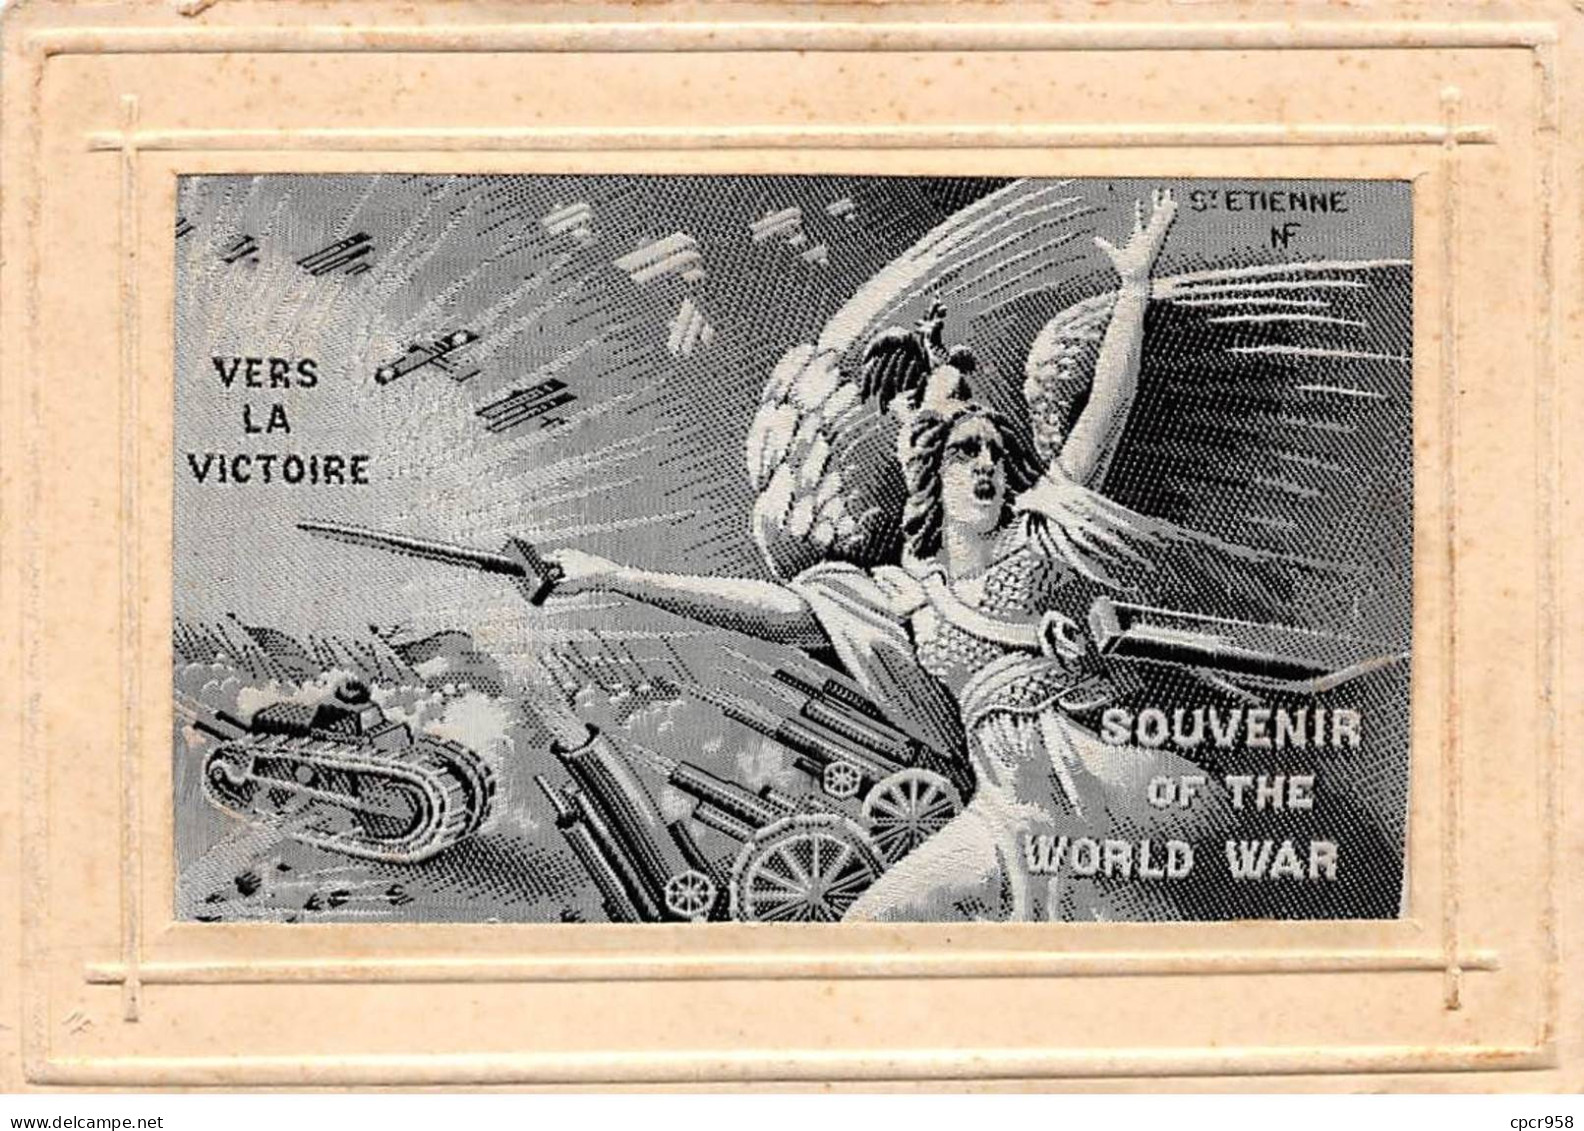 Brodées - N°90853 - Vers La Victoire - Souvenir Of The World War - Carte Tissée Soie.st Etienne - Borduurwerk